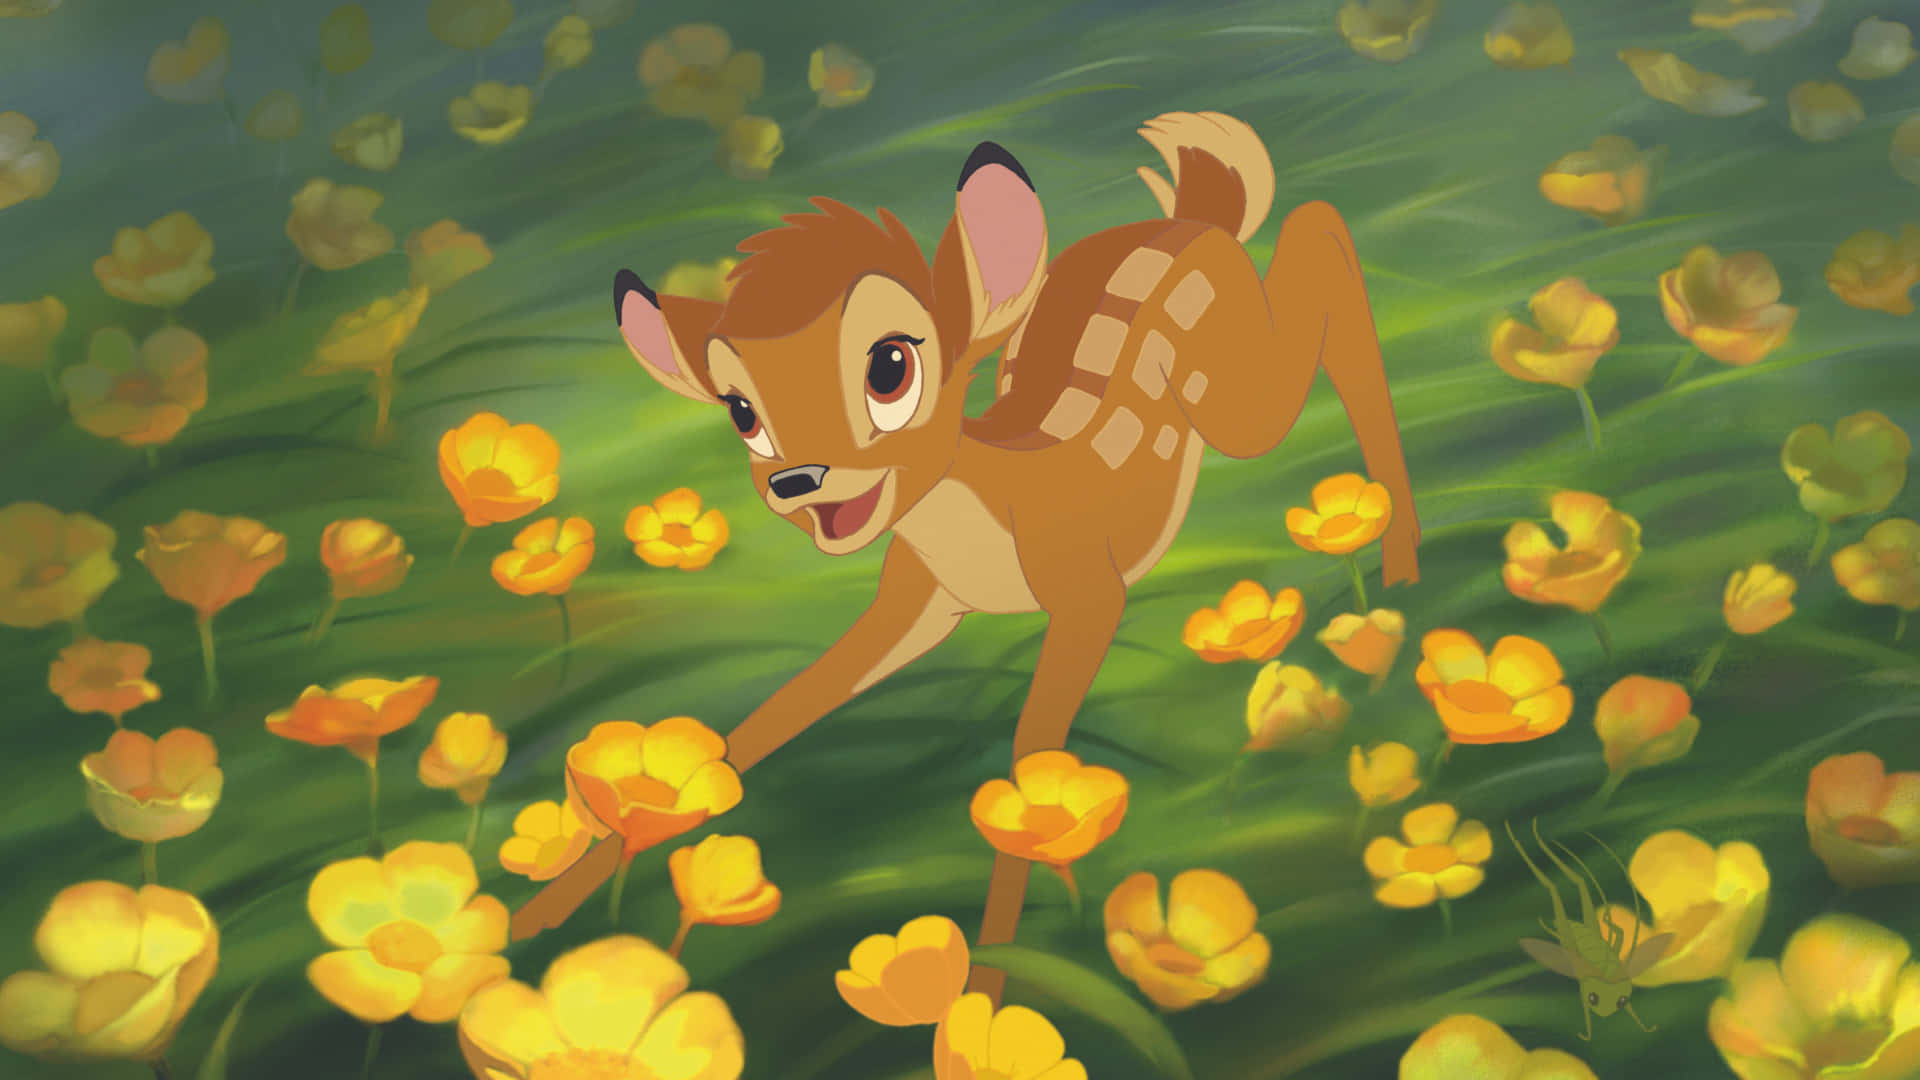 Unmomento Clásico De Disney Con Bambi Y Tambor.